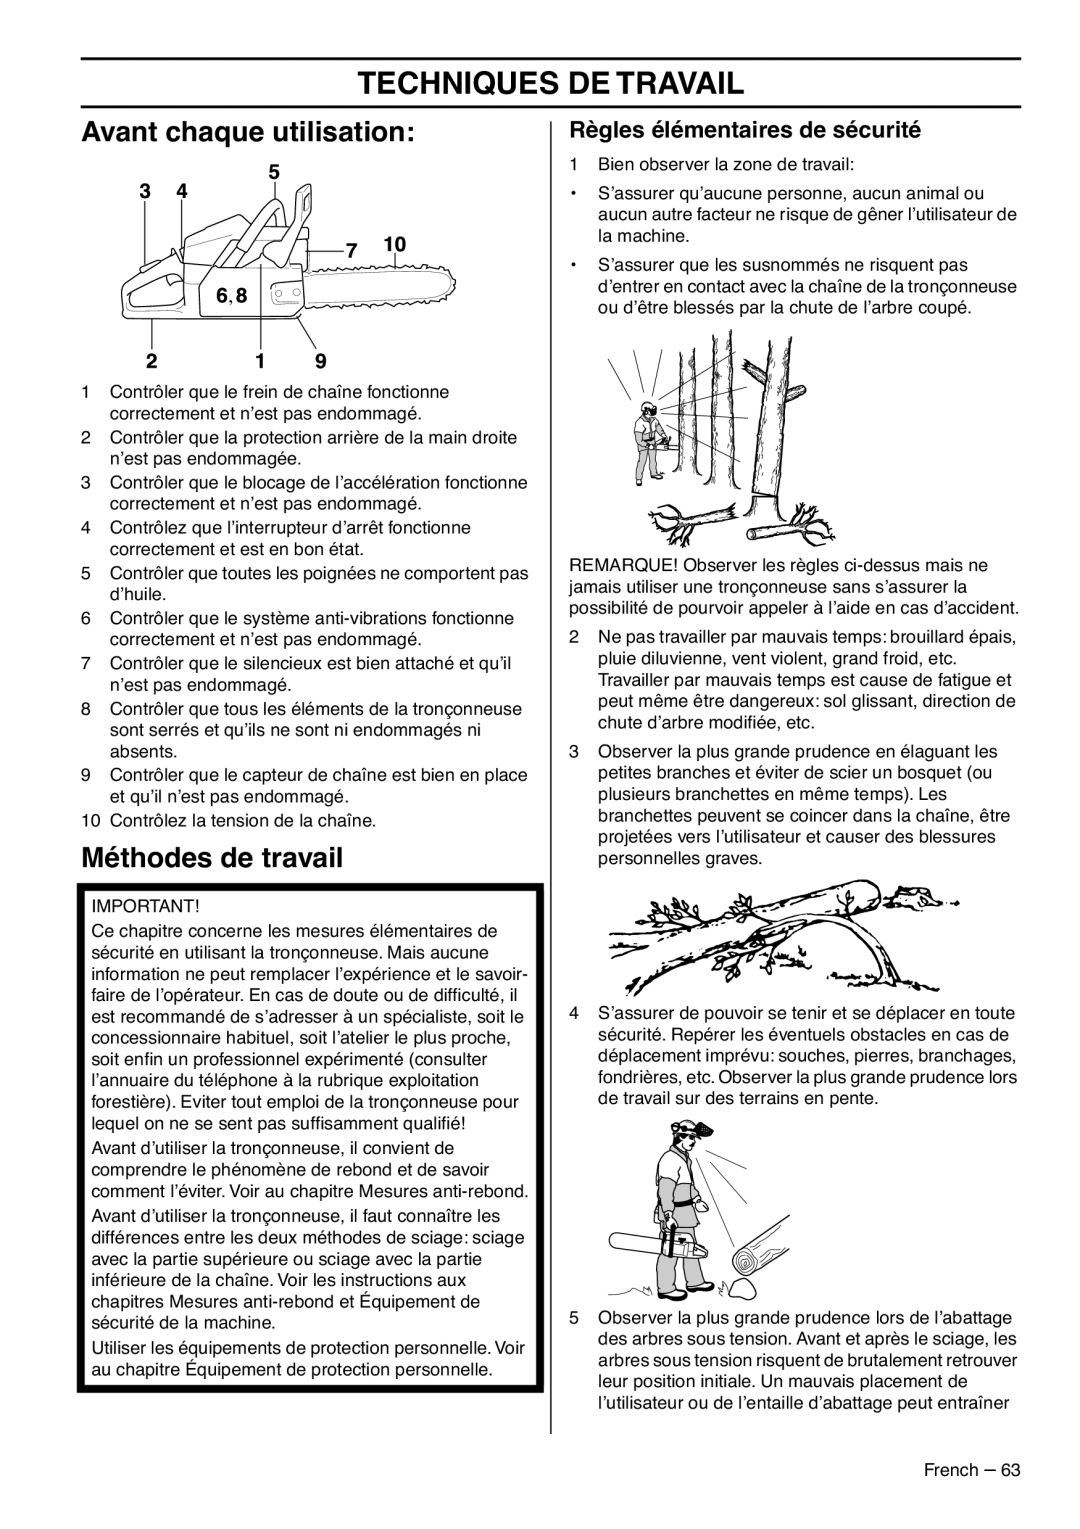 RedMax GZ7000 manual Techniques De Travail, Avant chaque utilisation, Méthodes de travail, Règles élémentaires de sécurité 